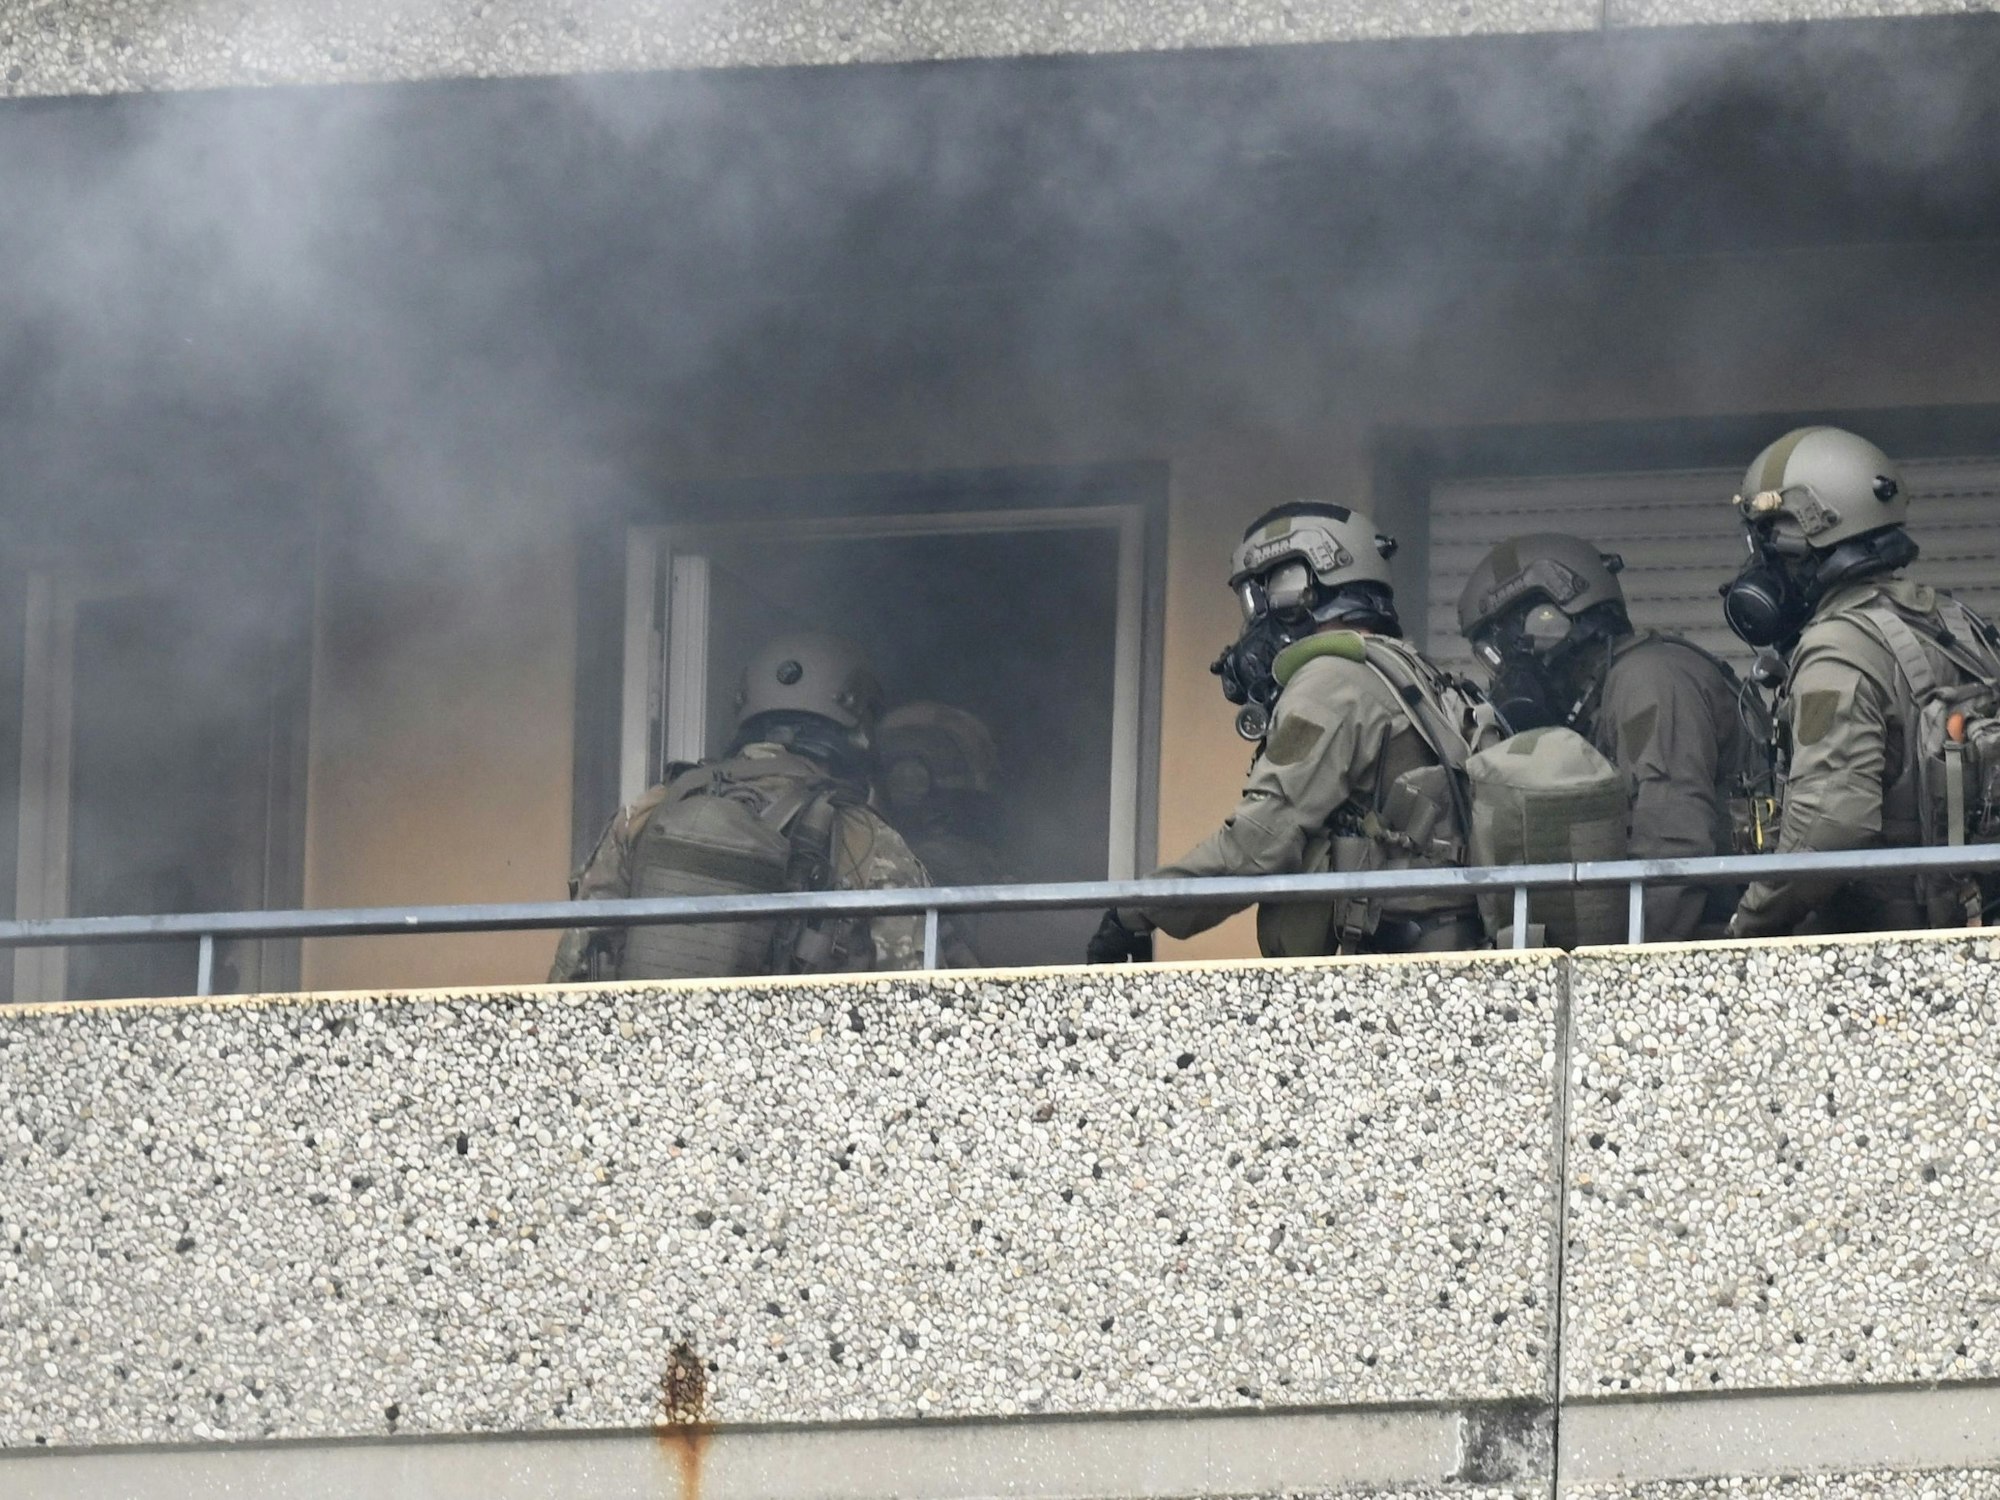 Spezialkräfte der Polizei betreten inmitten von Rauch eine Wohnung in einem Hochhaus.